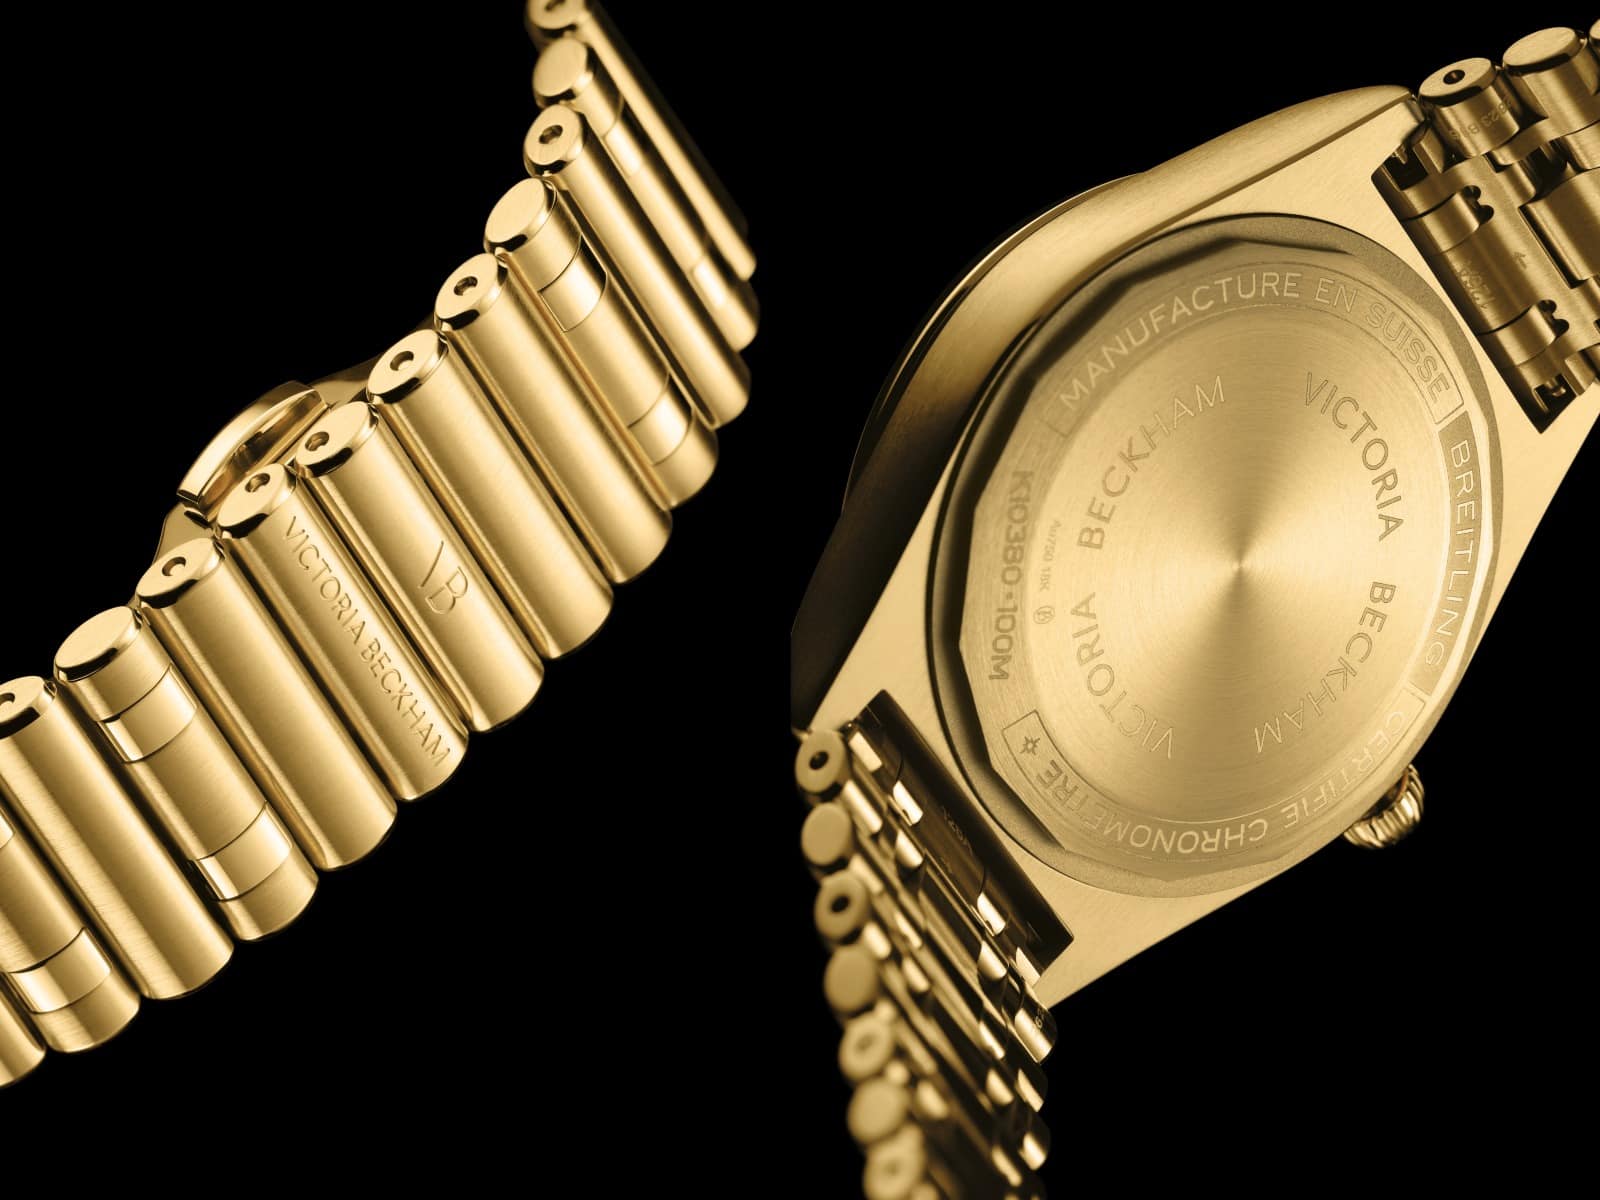 Armband aus Gehäuse aus Gold mit Victoria Beckham Schriftzug